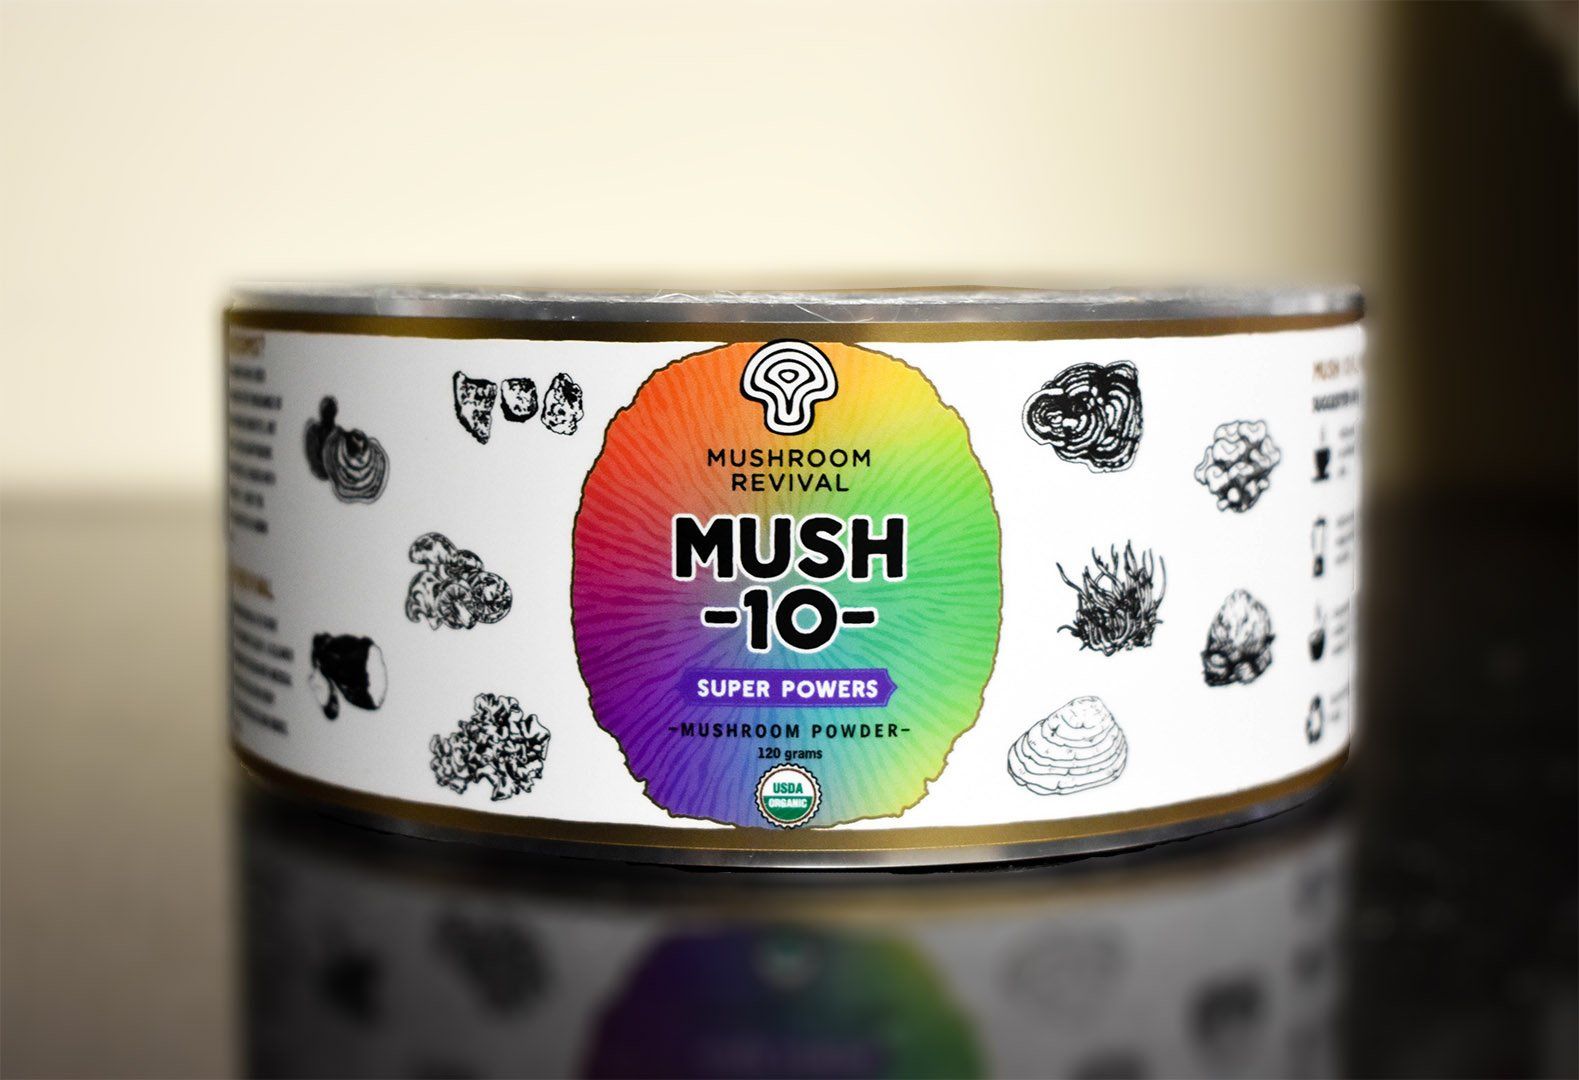 Mushroom Revival Mush 10 Labels